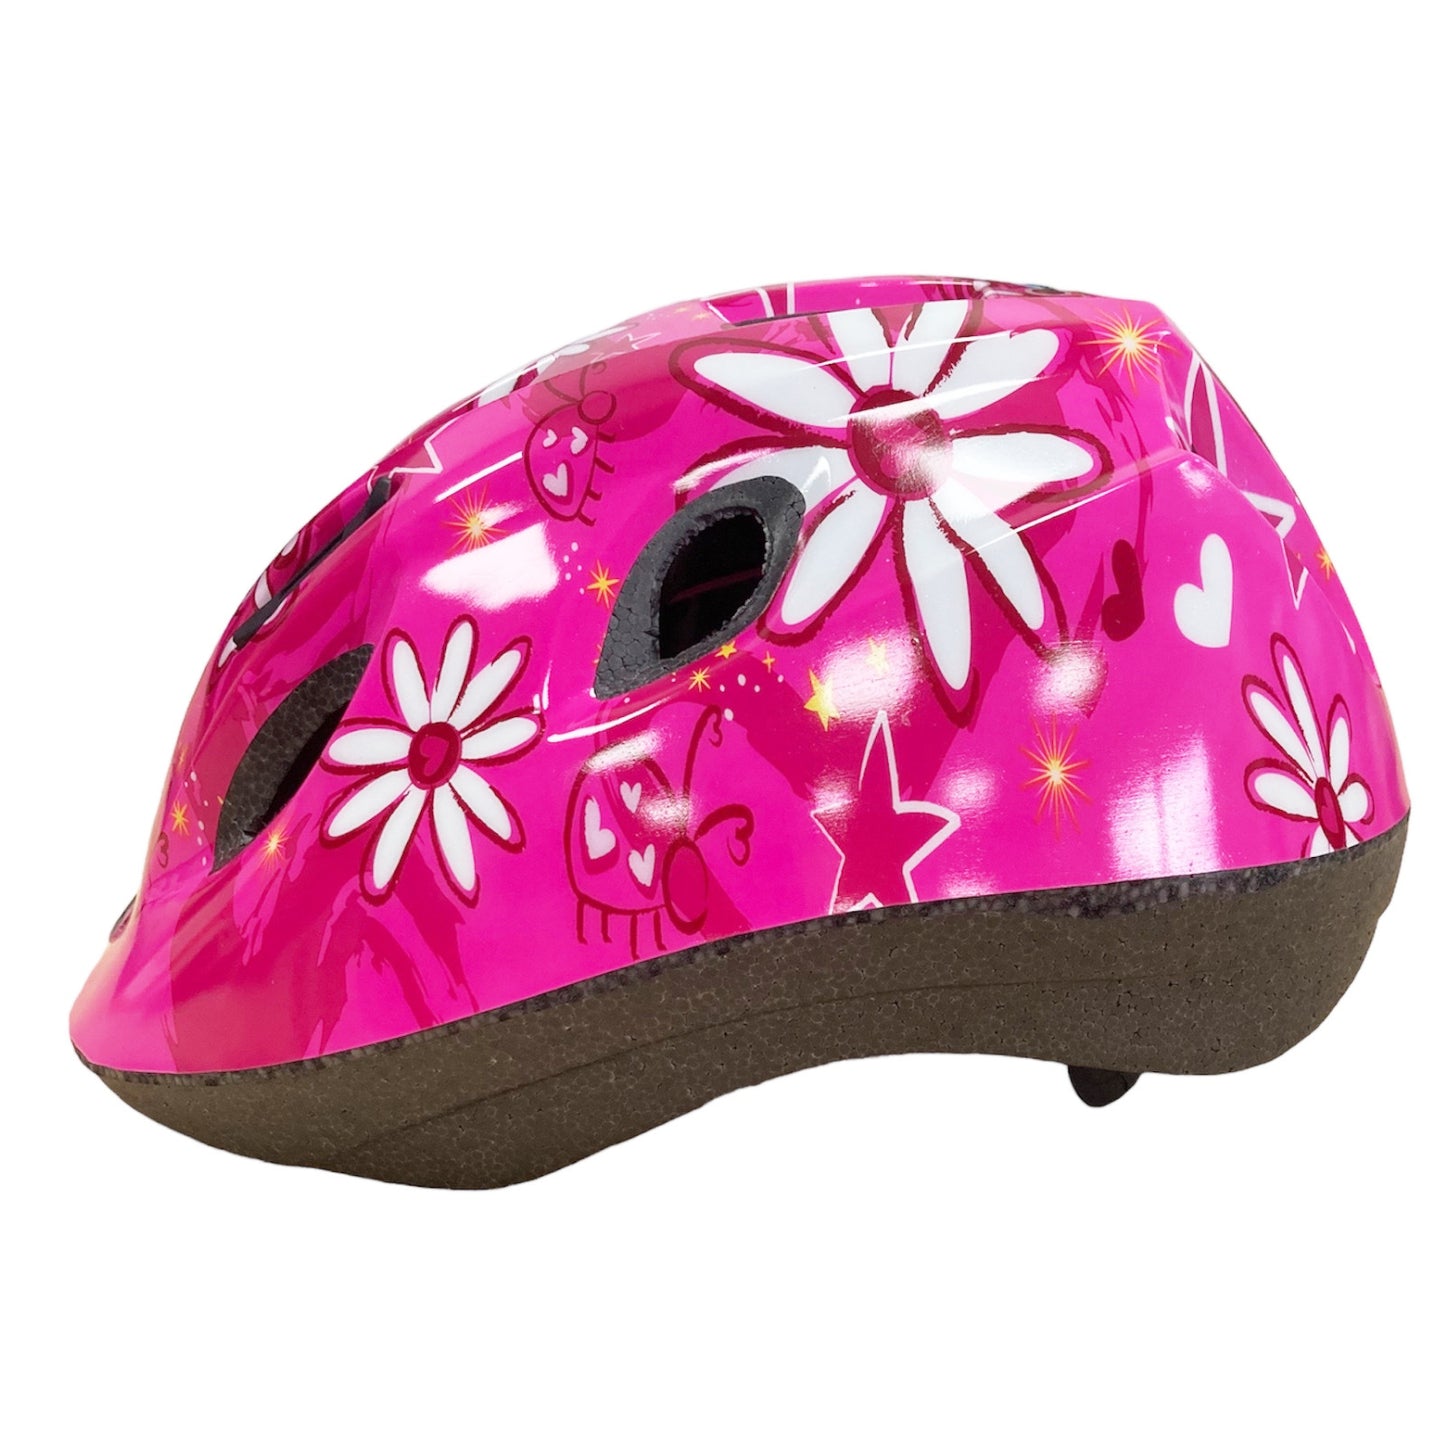 Raleigh Mystery Pink Flowers Kid's Cycling Helmet 48-54cm Alternate 4